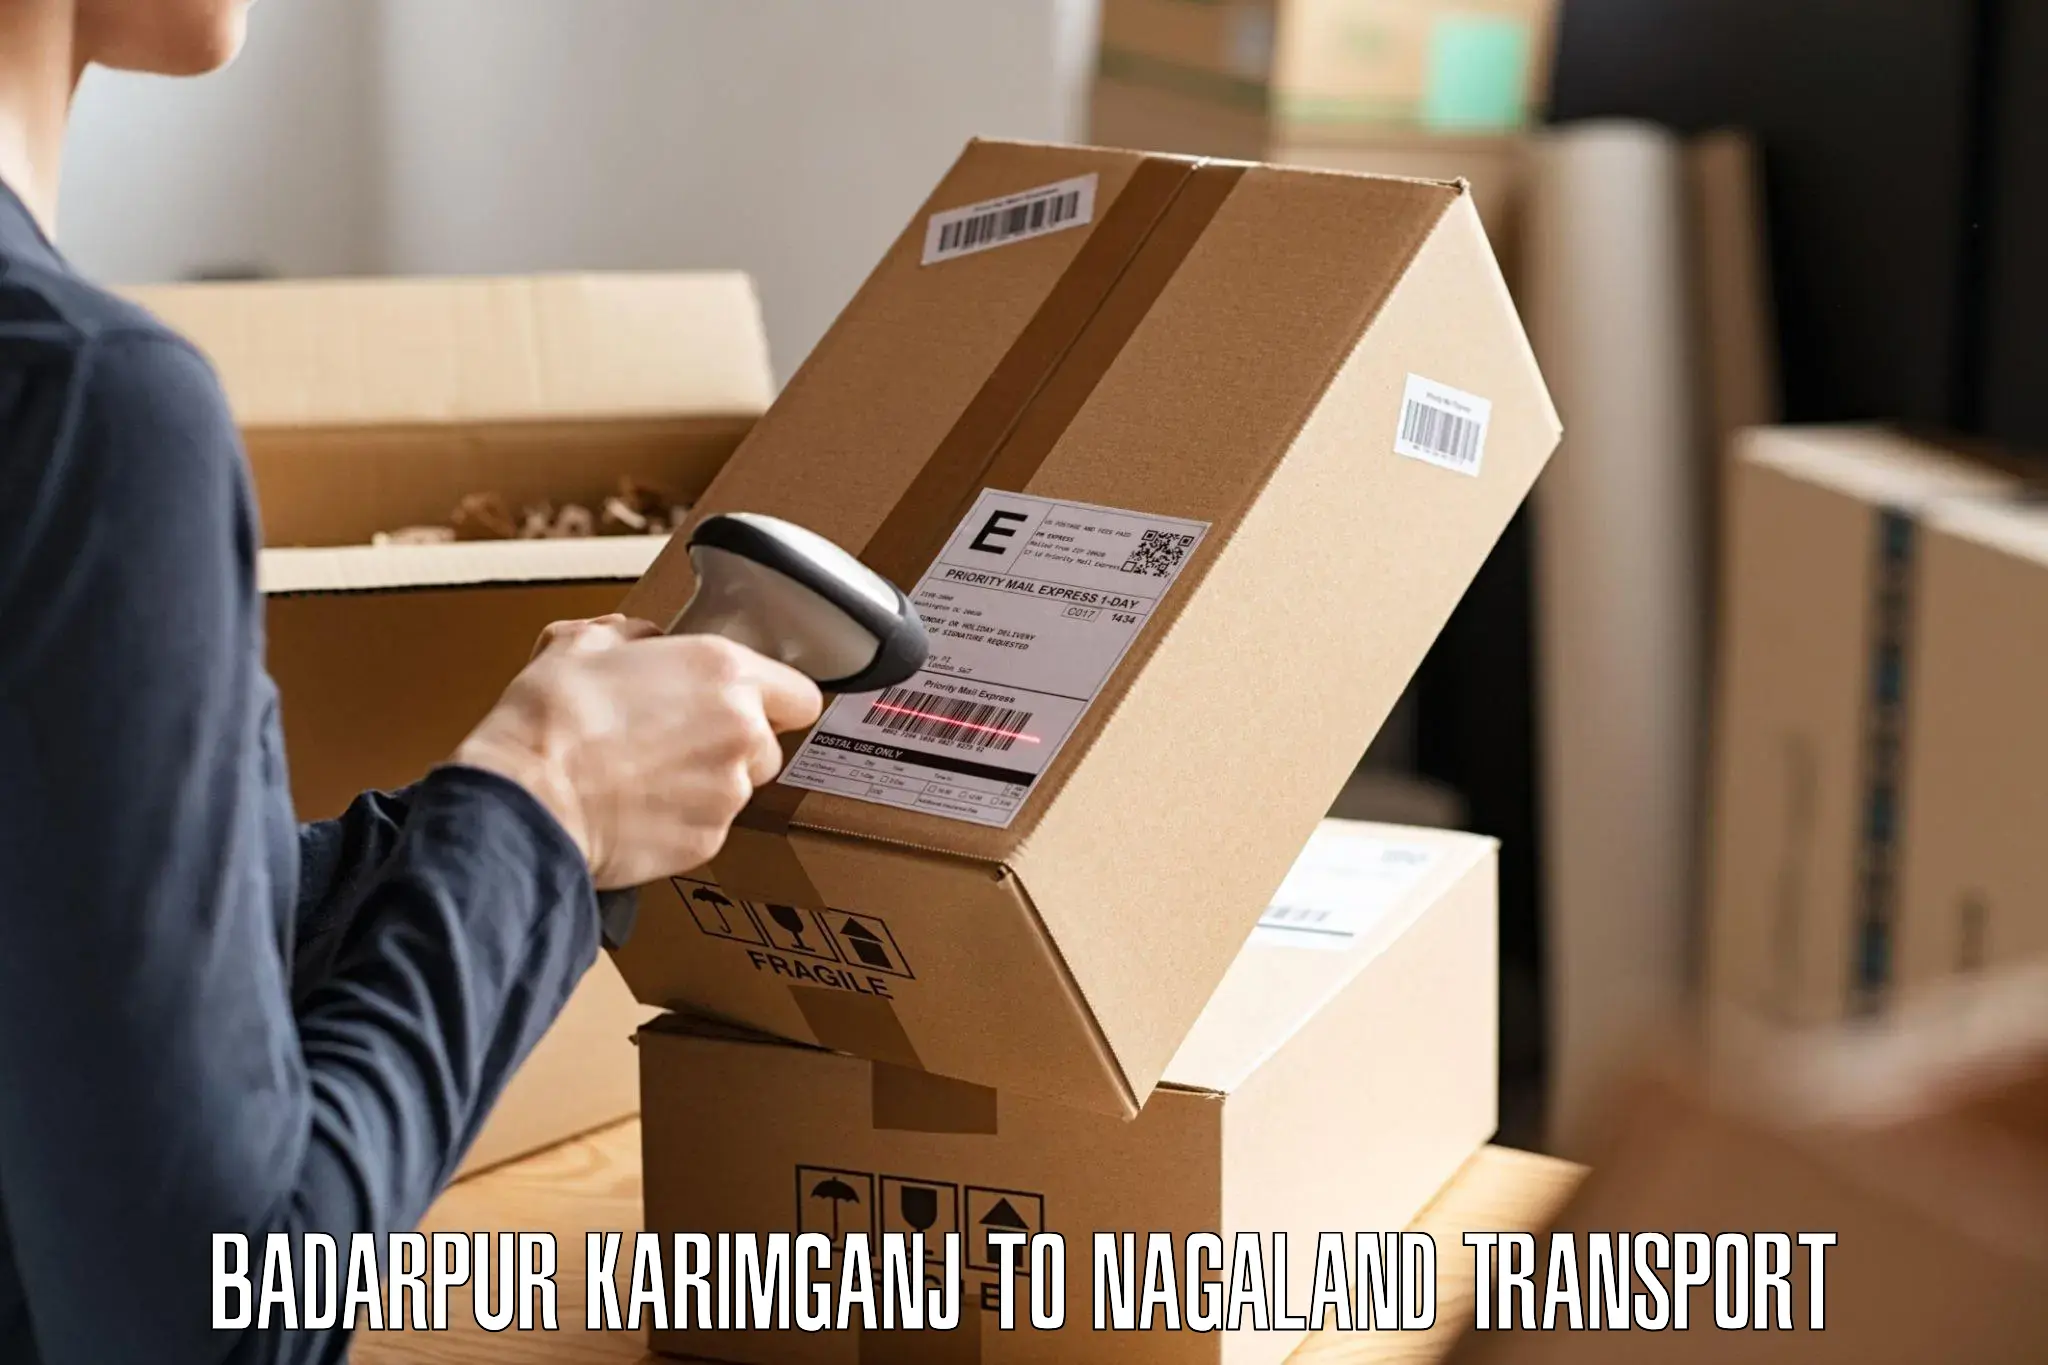 Furniture transport service Badarpur Karimganj to Peren